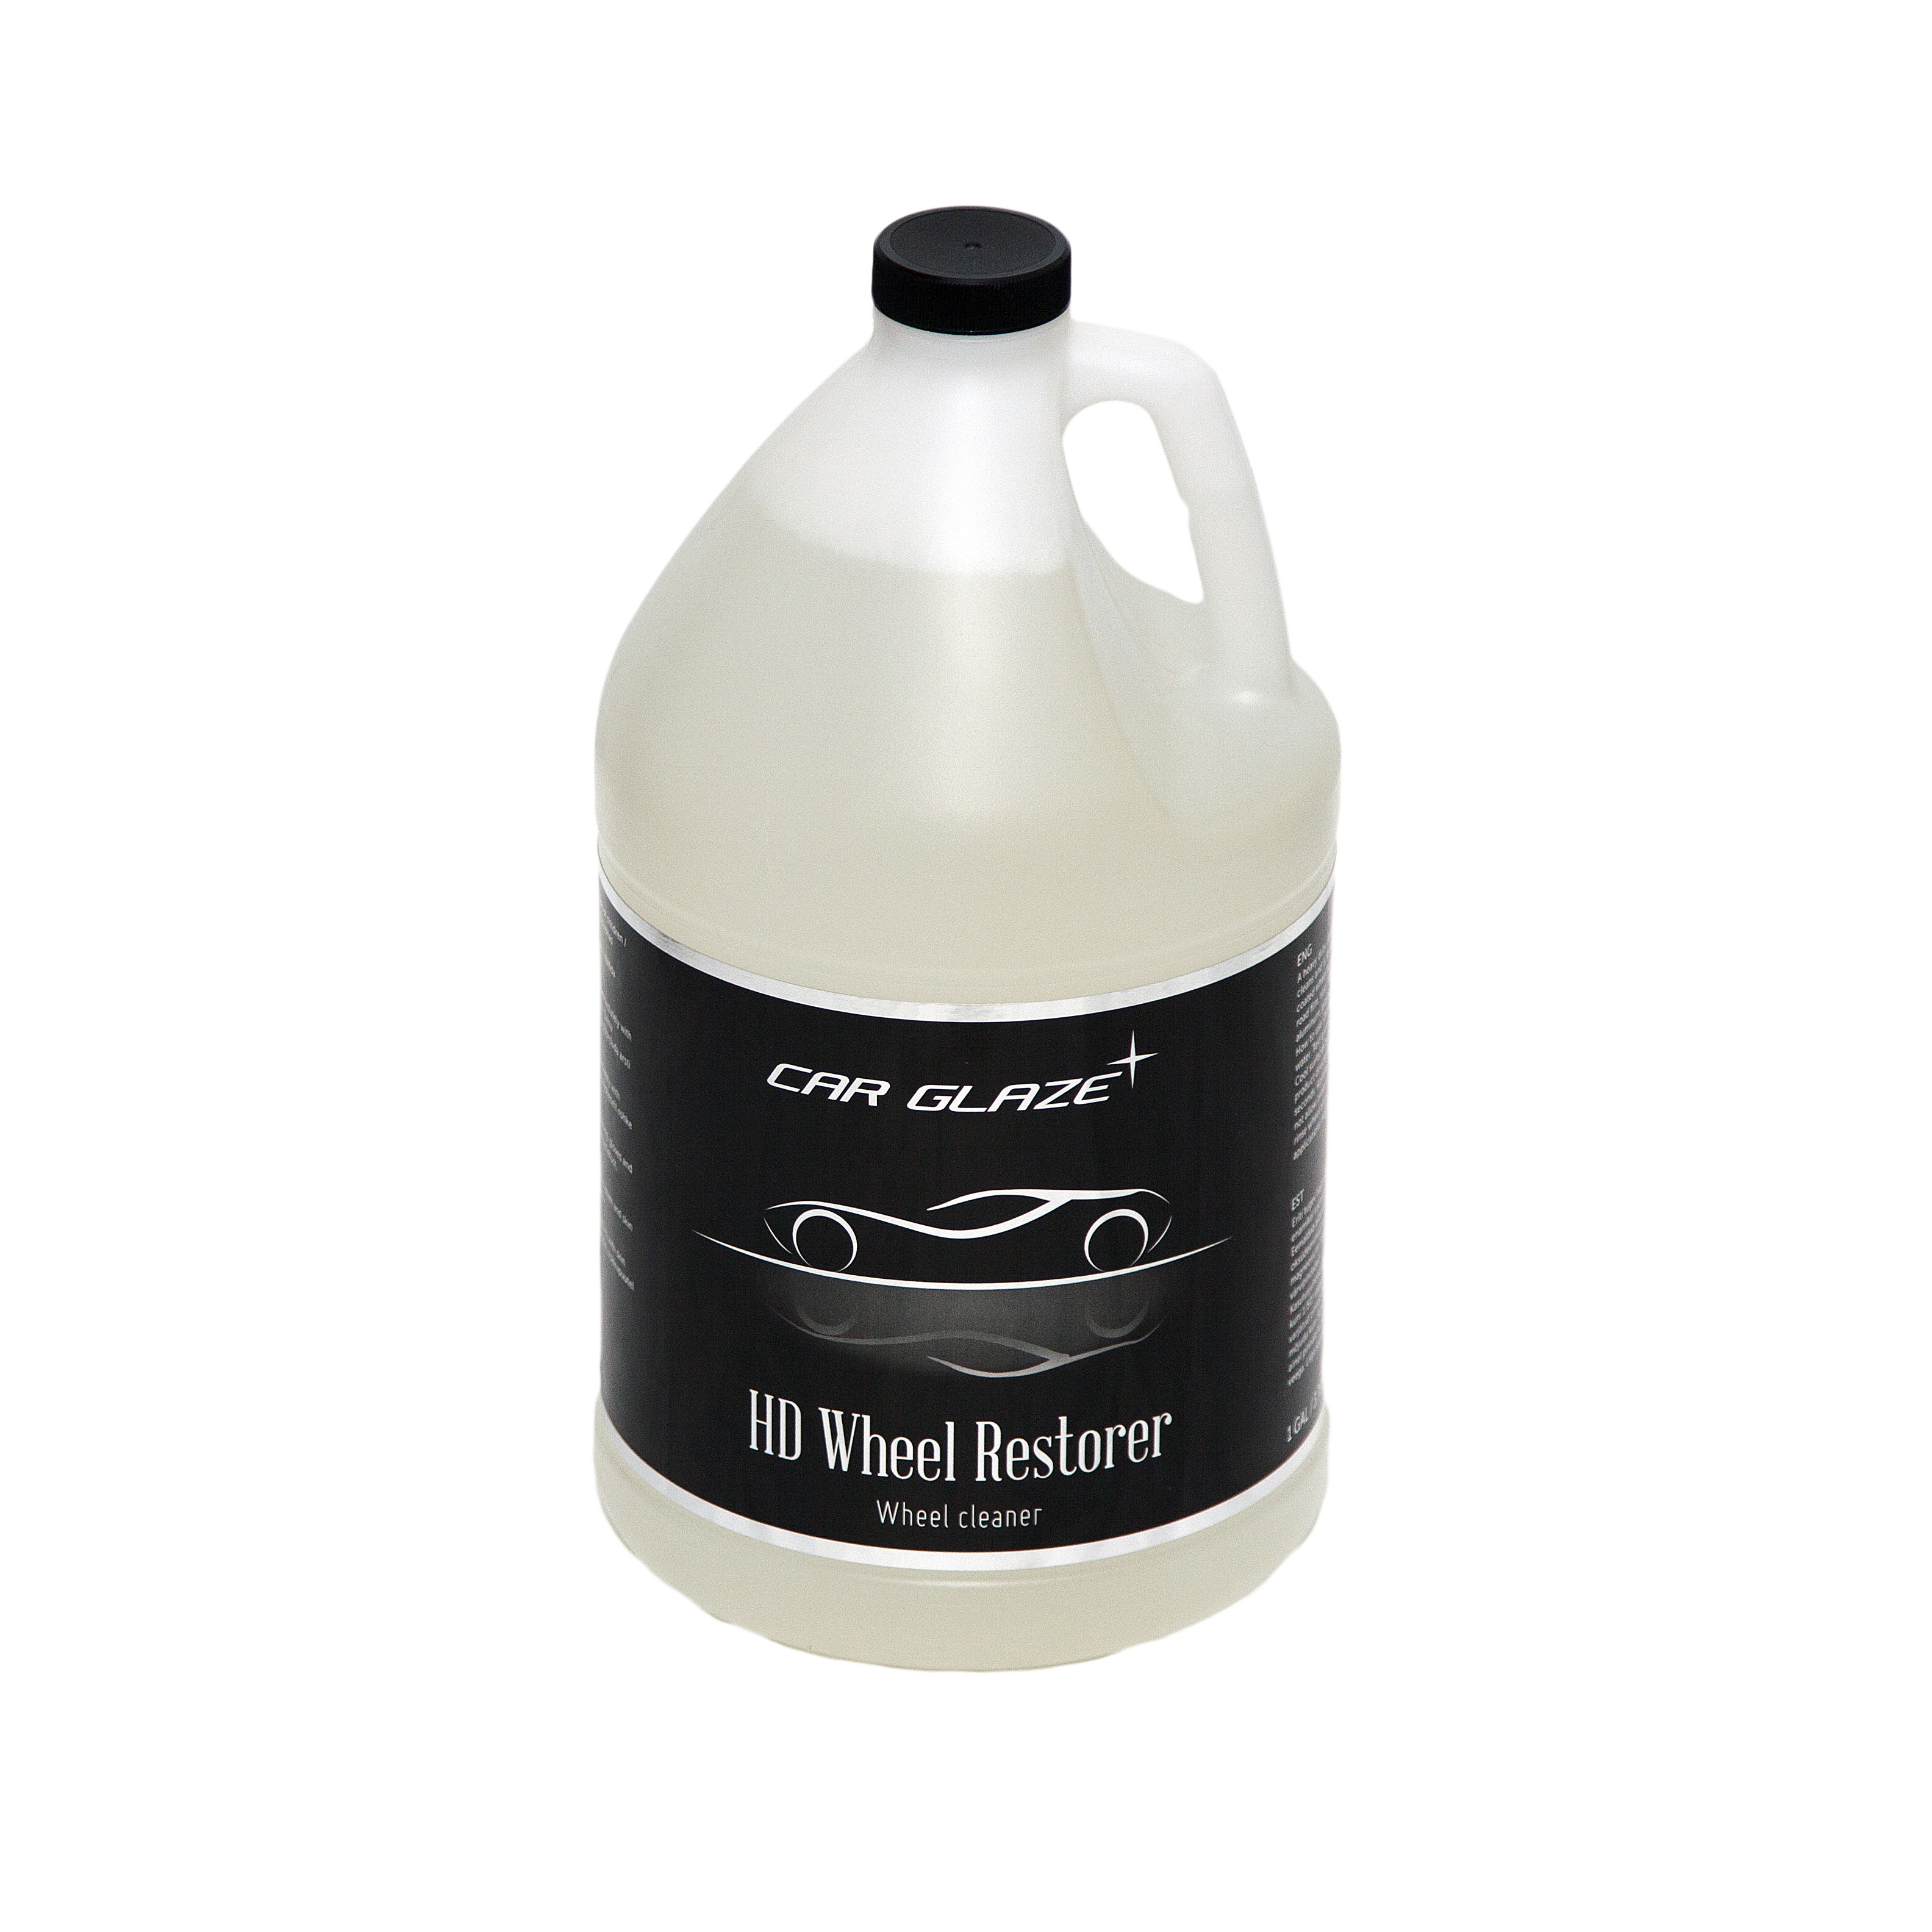 HD WHEEL RESTORER - Car Glaze - кислота для ободов колес - мытье ободов колес - очиститель ободов - средство для чистки ободов